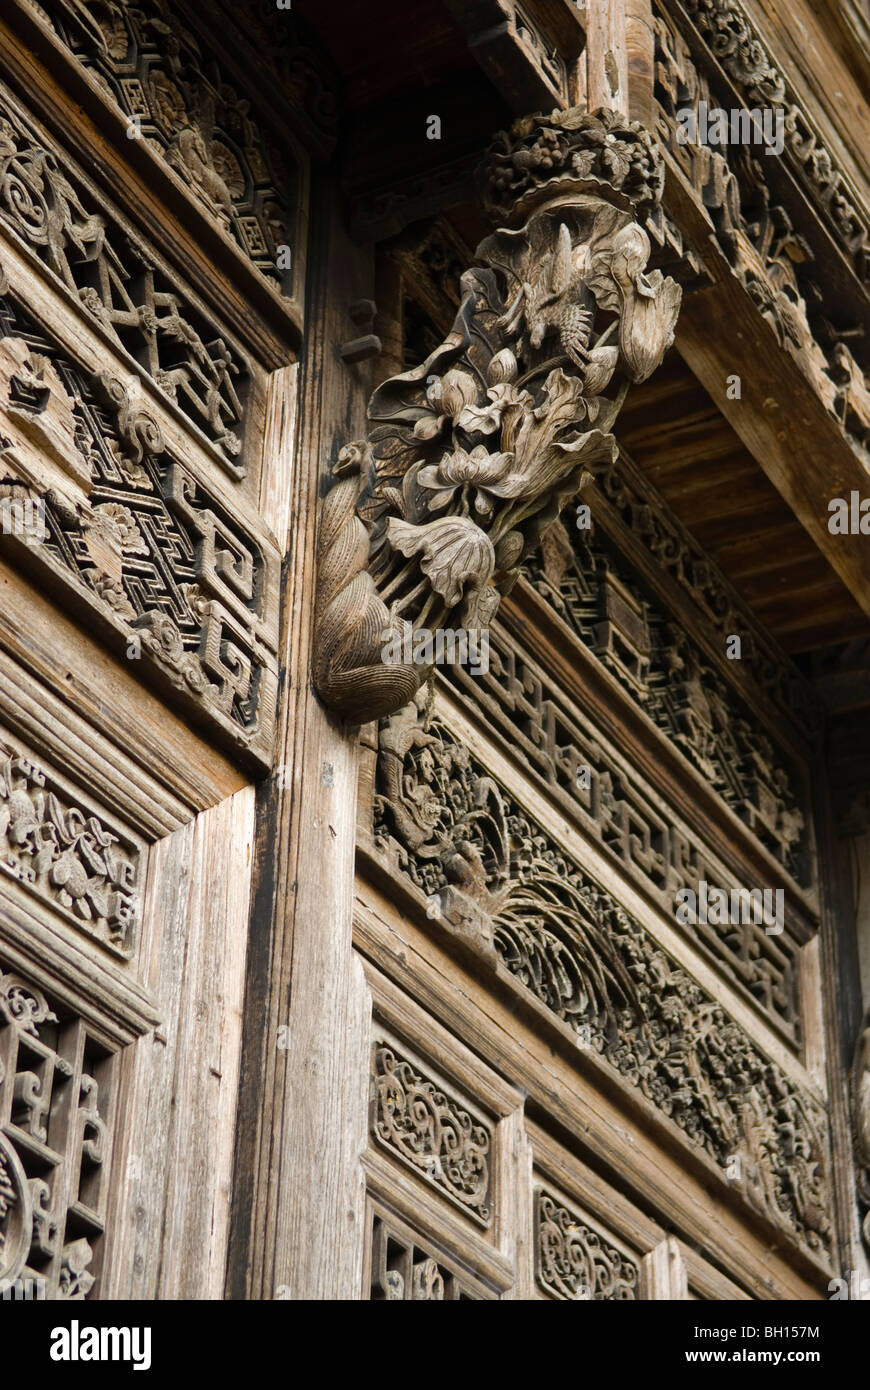 Elaboradamente los paneles y puertas de madera tallada en la antigua morada del acaudalado comerciante. Sixi. Jiangxi, China. Foto de stock